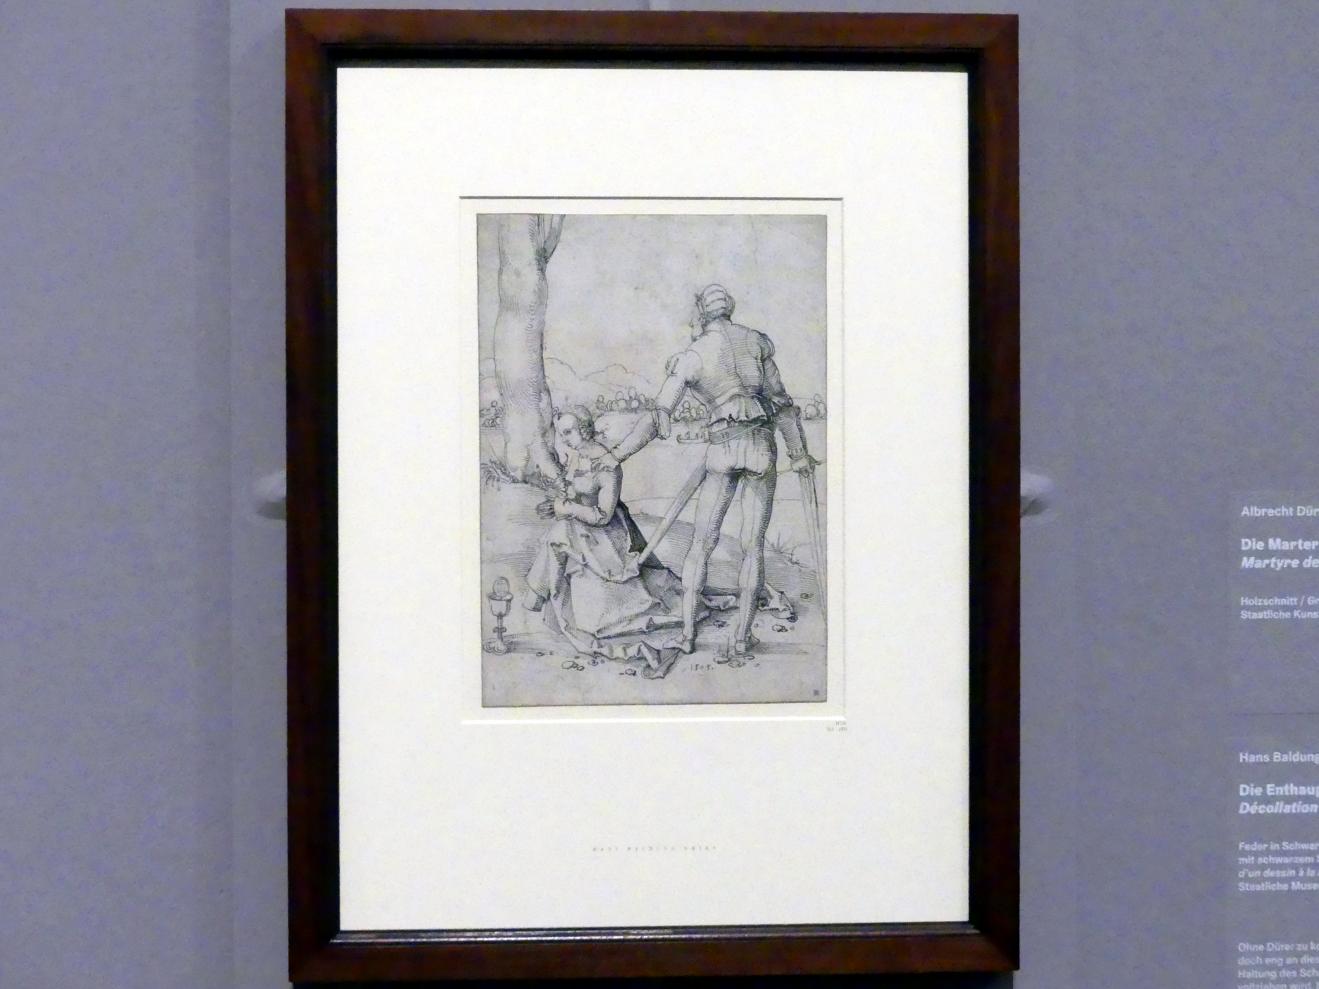 Hans Baldung Grien (1500–1544), Die Enthauptung der heiligen Barbara, Karlsruhe, Staatliche Kunsthalle, Ausstellung "Hans Baldung Grien, heilig | unheilig", Saal 1, 1505, Bild 2/3